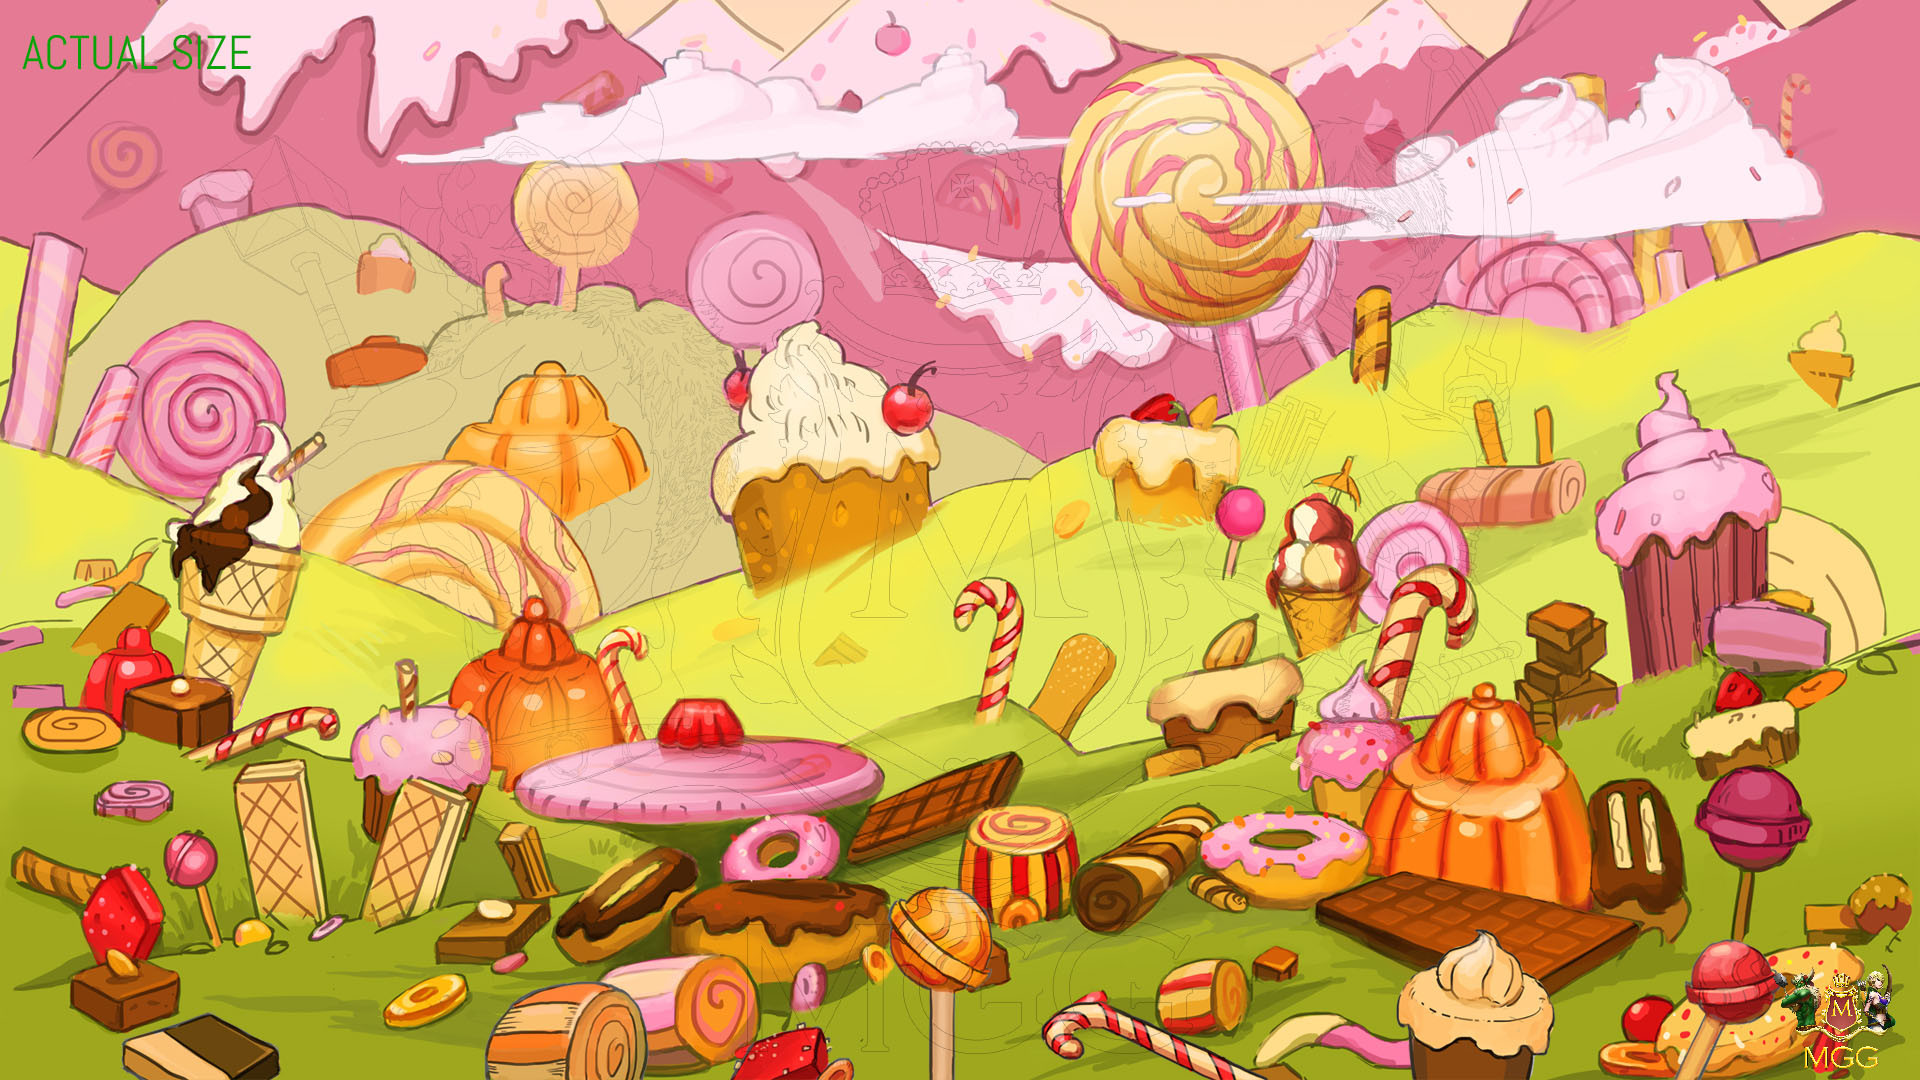 Candyland [Original] : r/TwoDeeArt